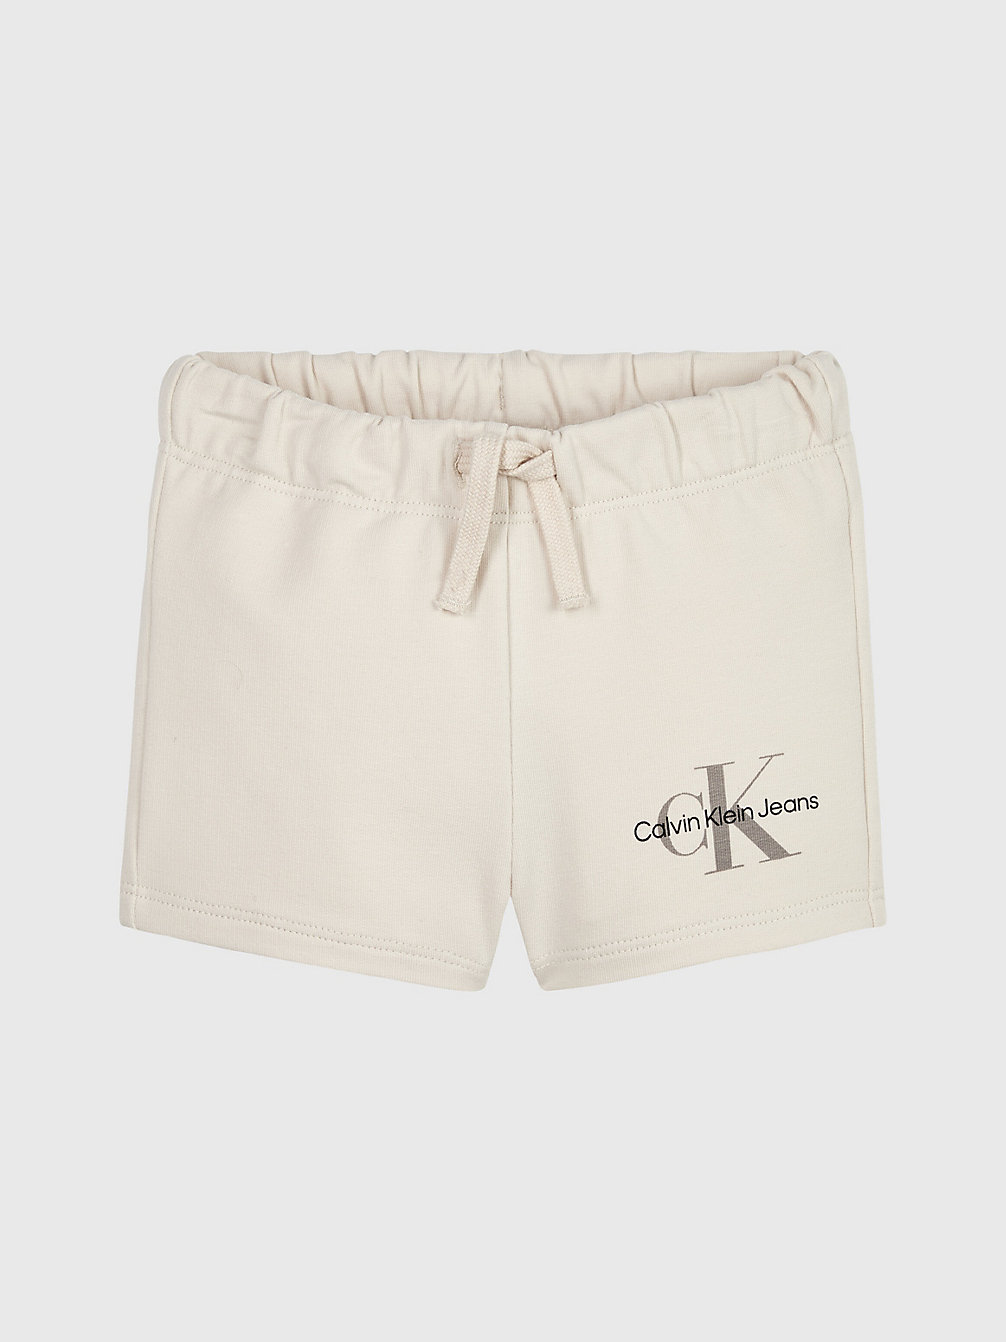 WHITECAP GRAY Newborn Organic Cotton Shorts undefined newborn Calvin Klein